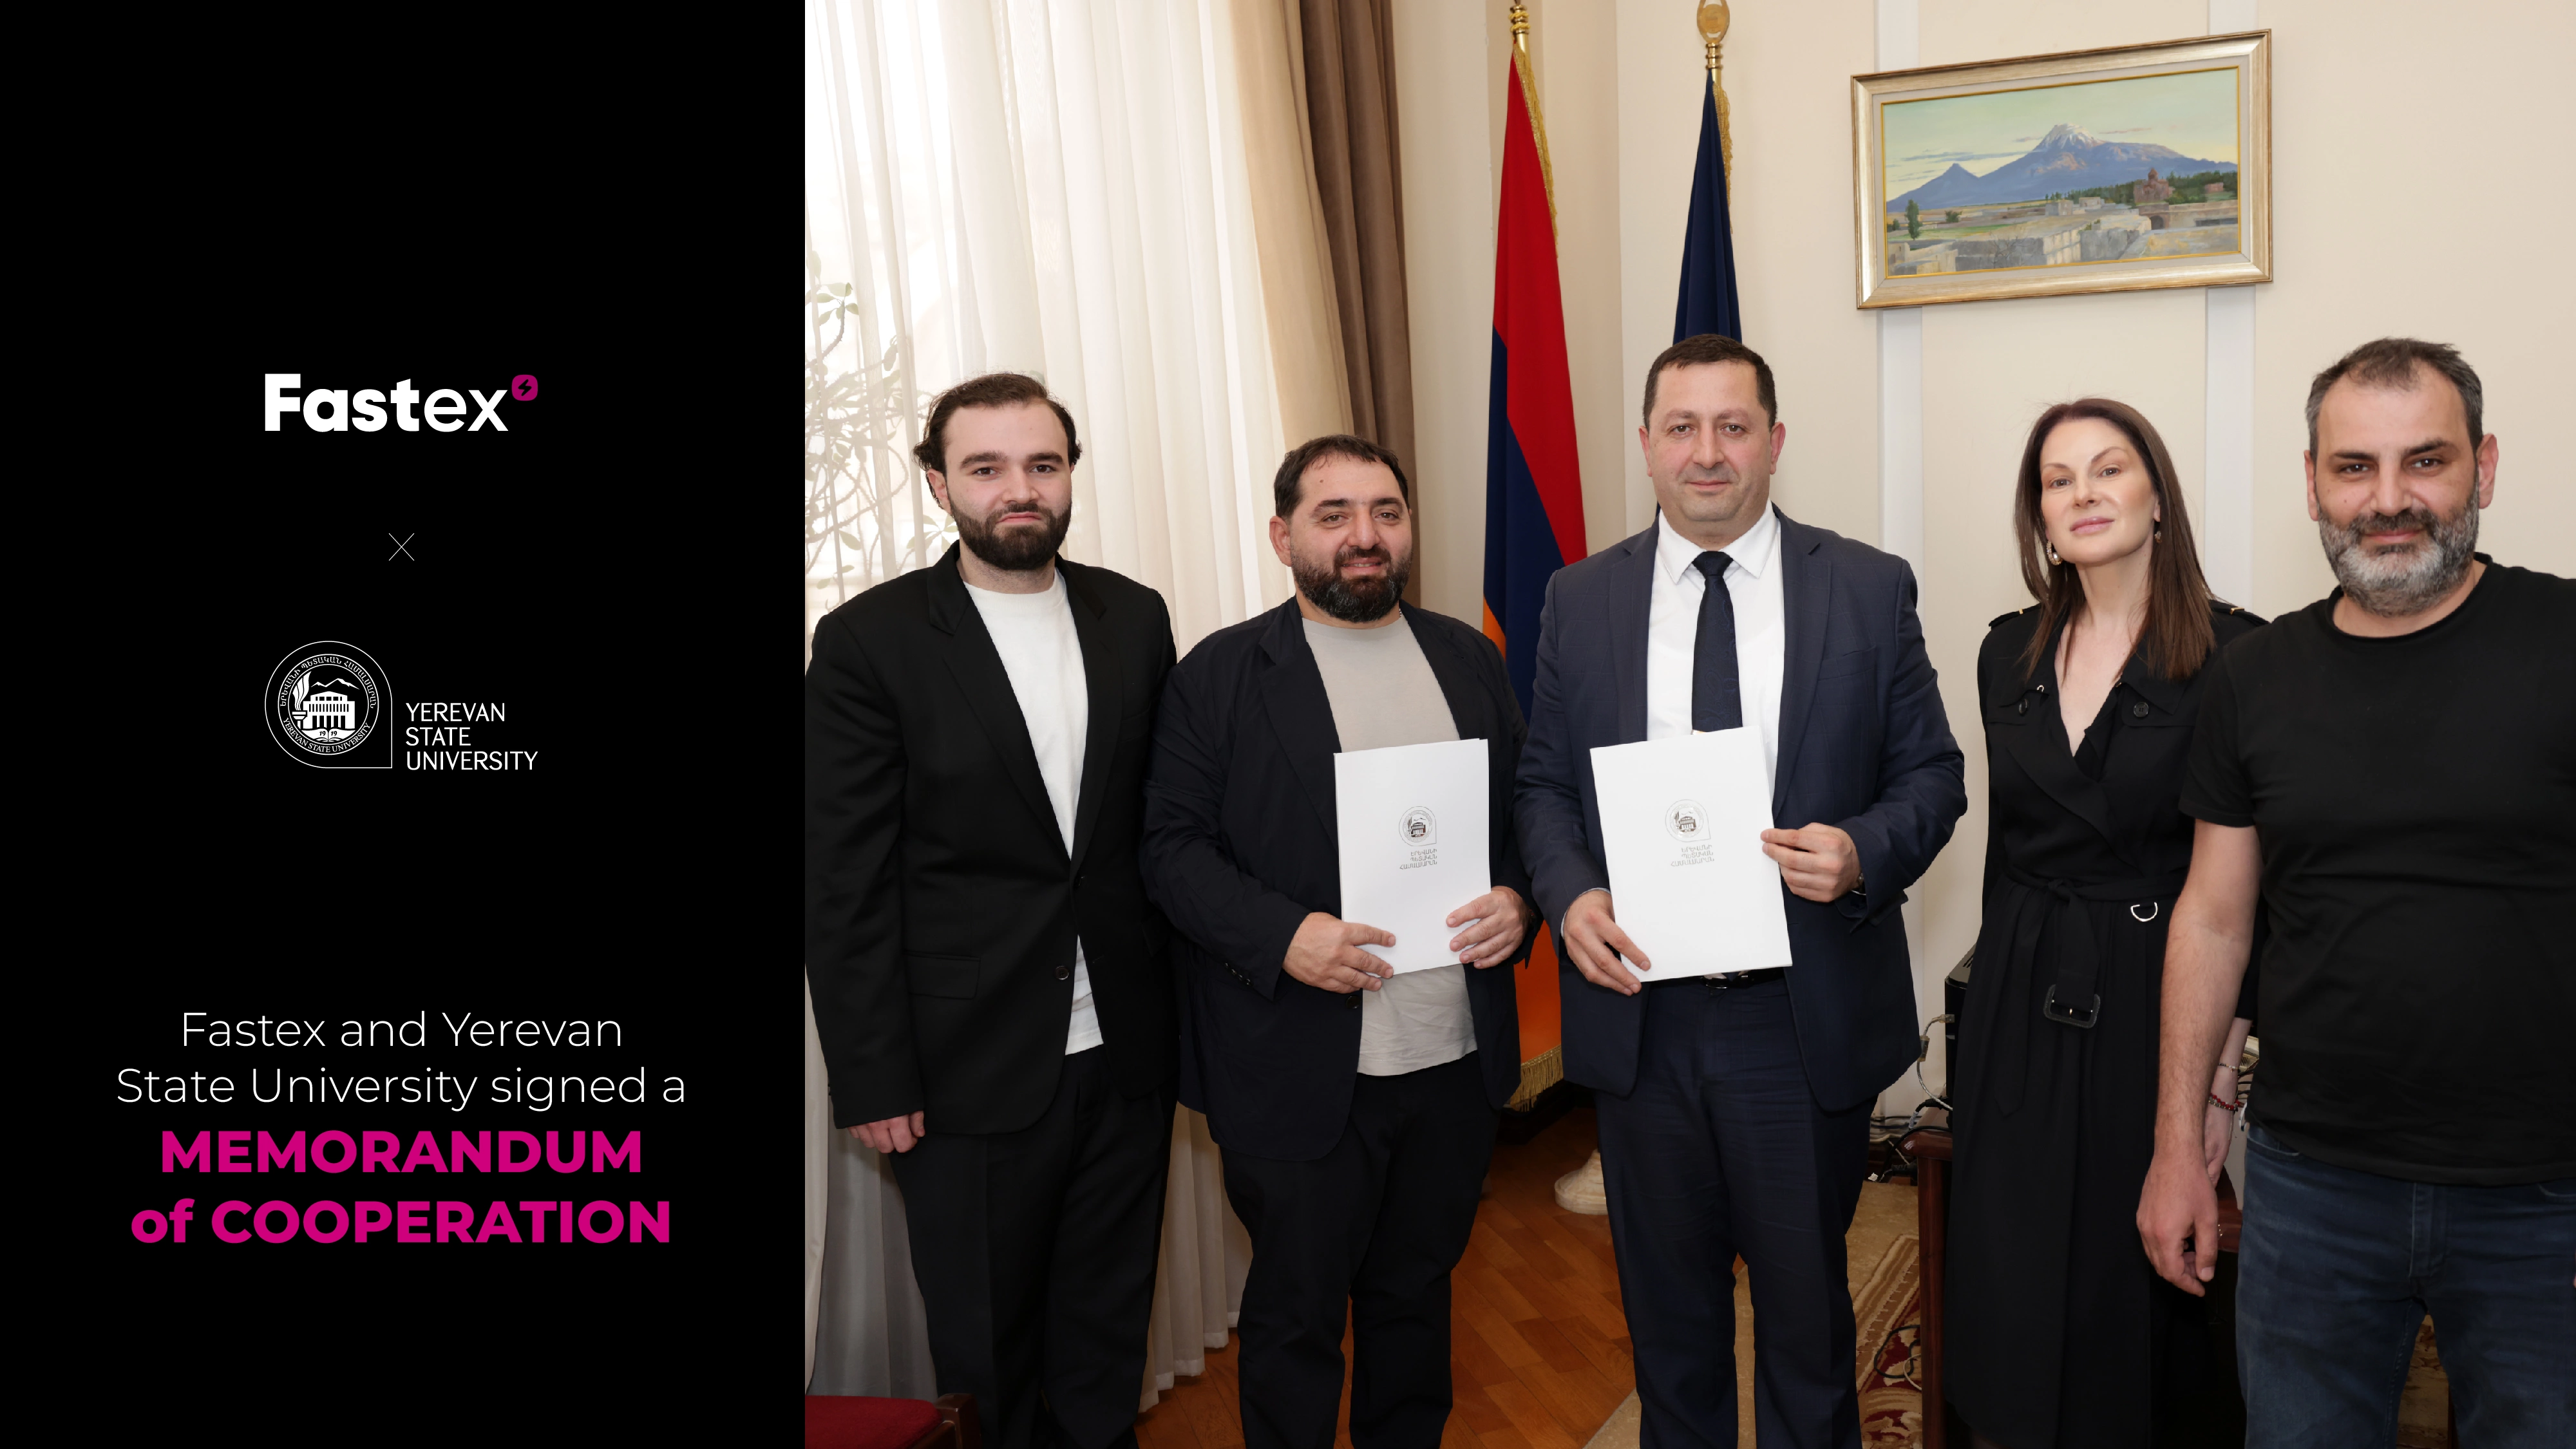 وقعت Fastex وجامعة يريفان الحكومية مذكرة تعاون